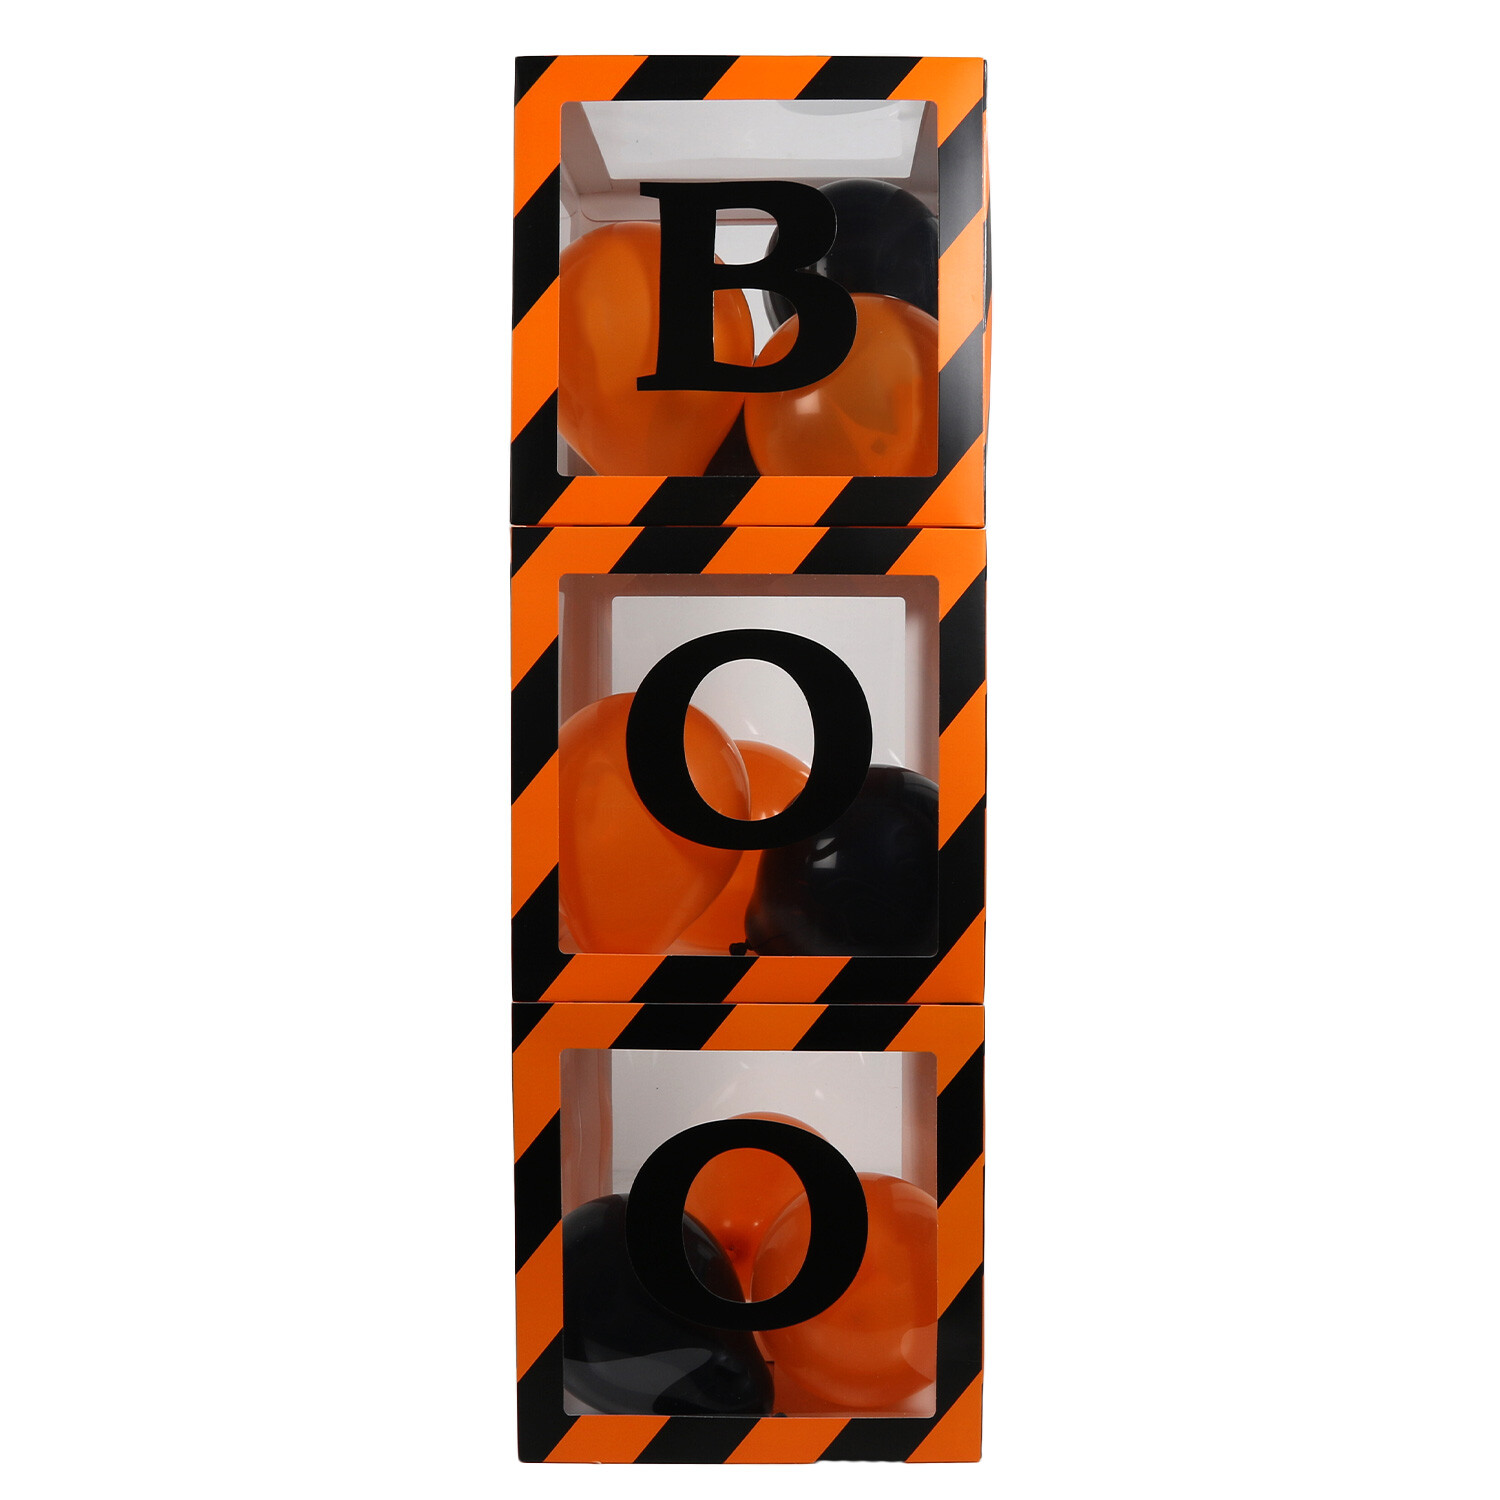 Boo Balloon Boxes - Orange Image 2